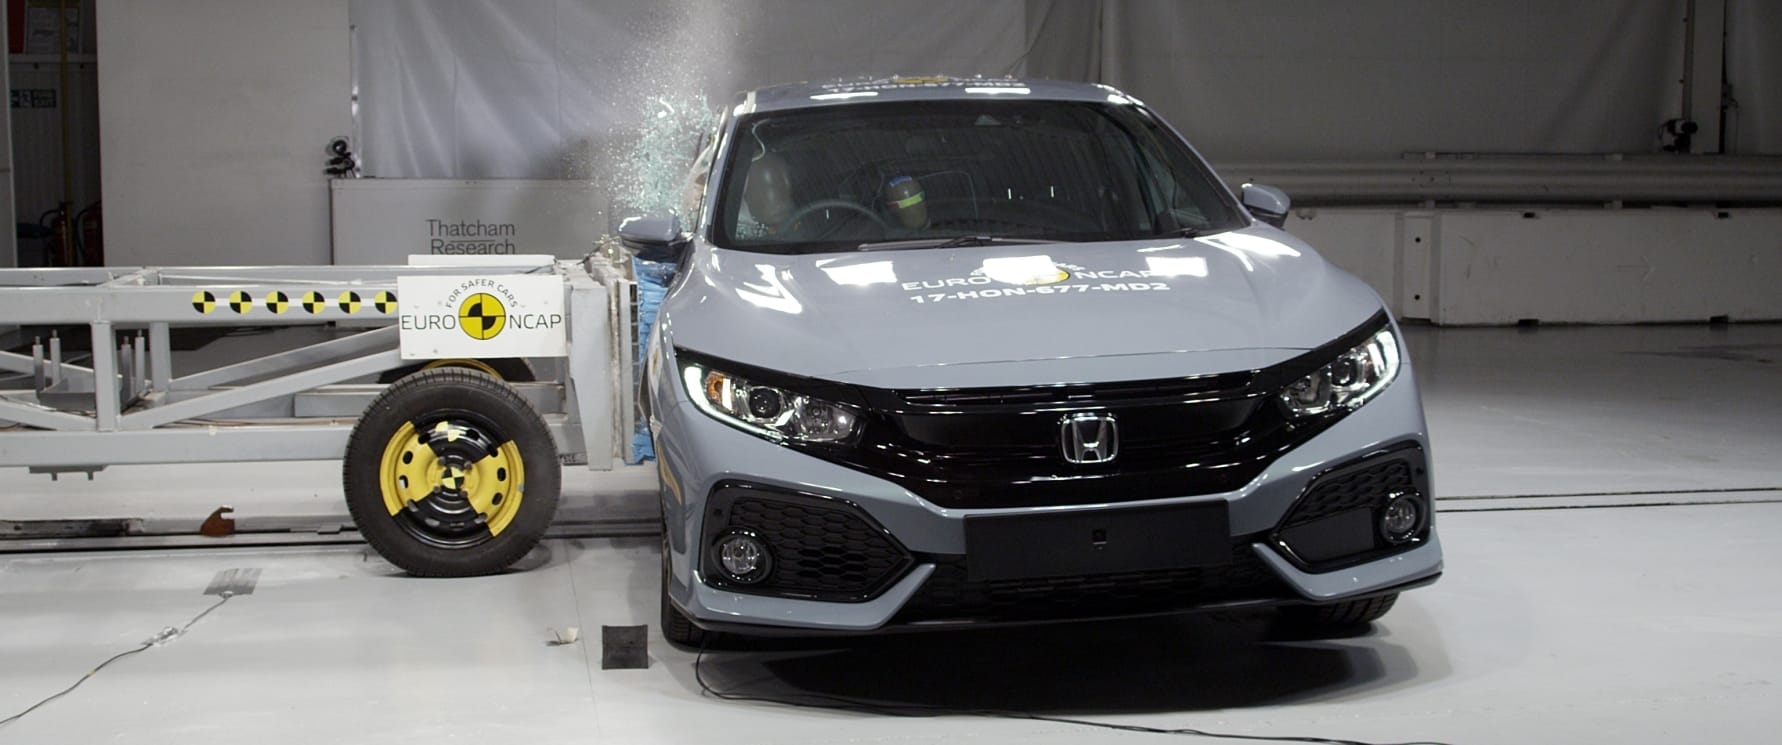 Honda Civic - side crash test Nov 2017